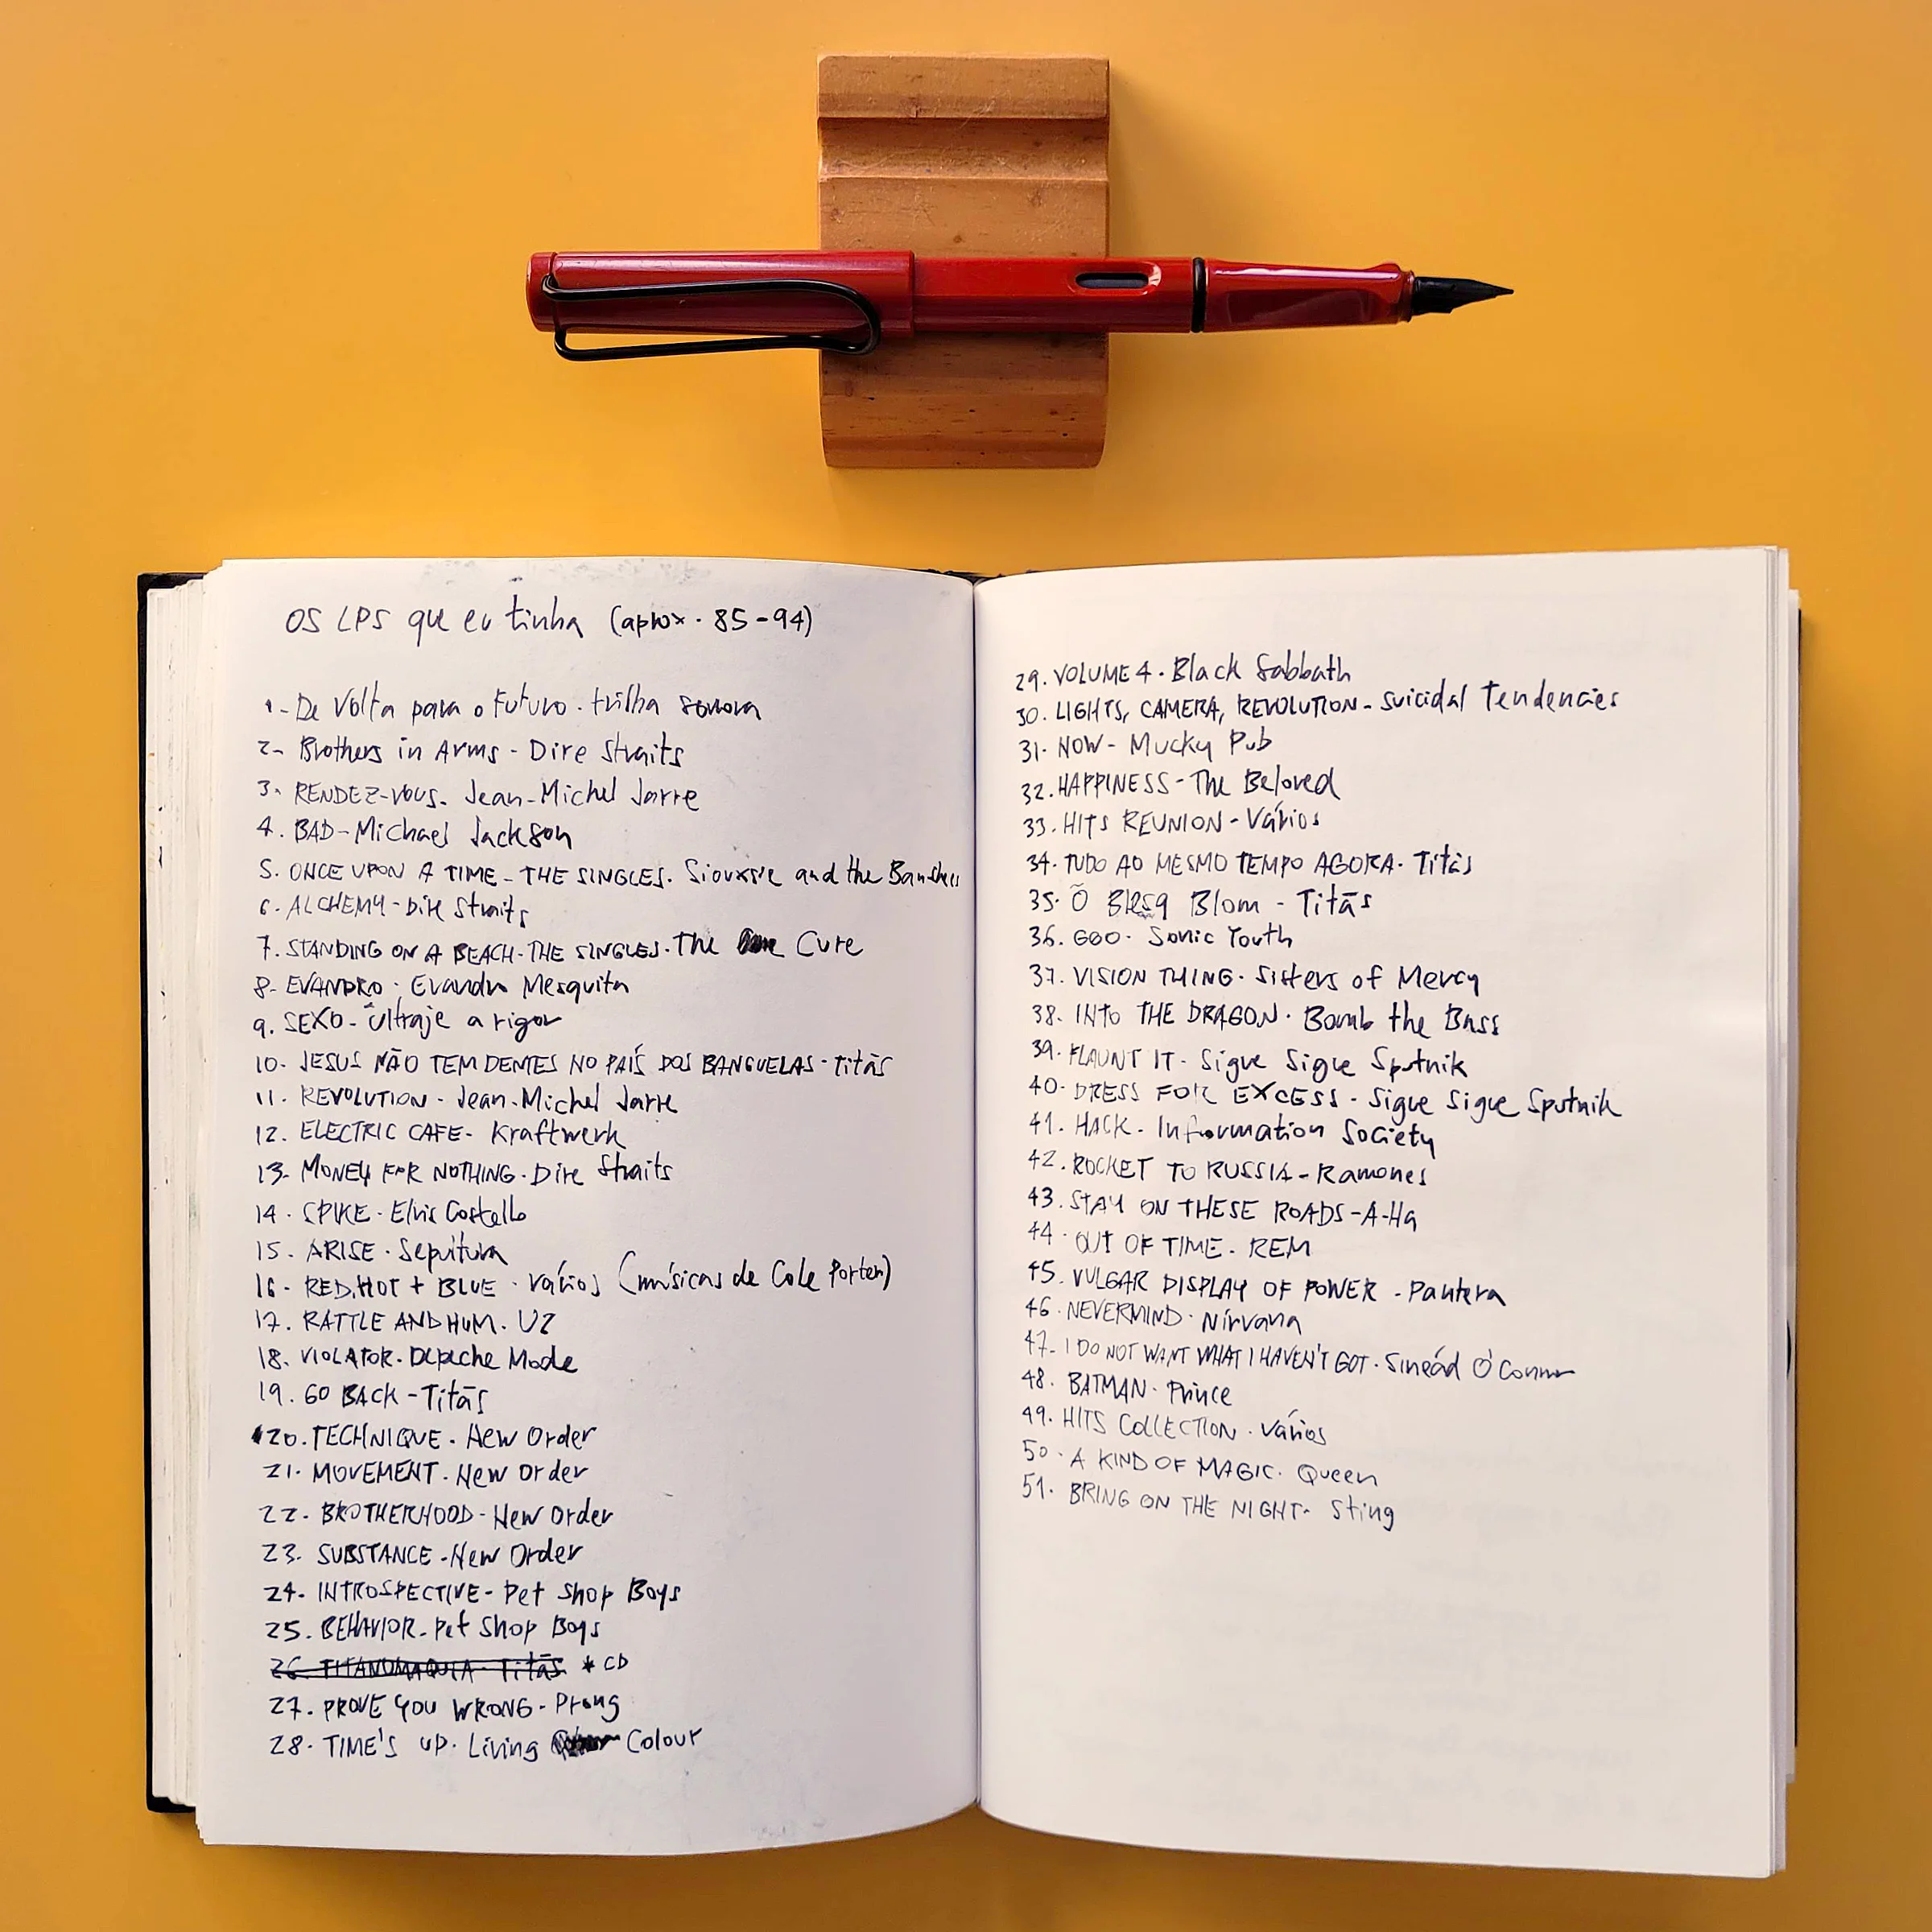 Foto de um caderno aberto com uma lista de discos (álbuns, LPs) sobre uma mesa laranja. Acima, uma caneta descansa sobre um suporte¸